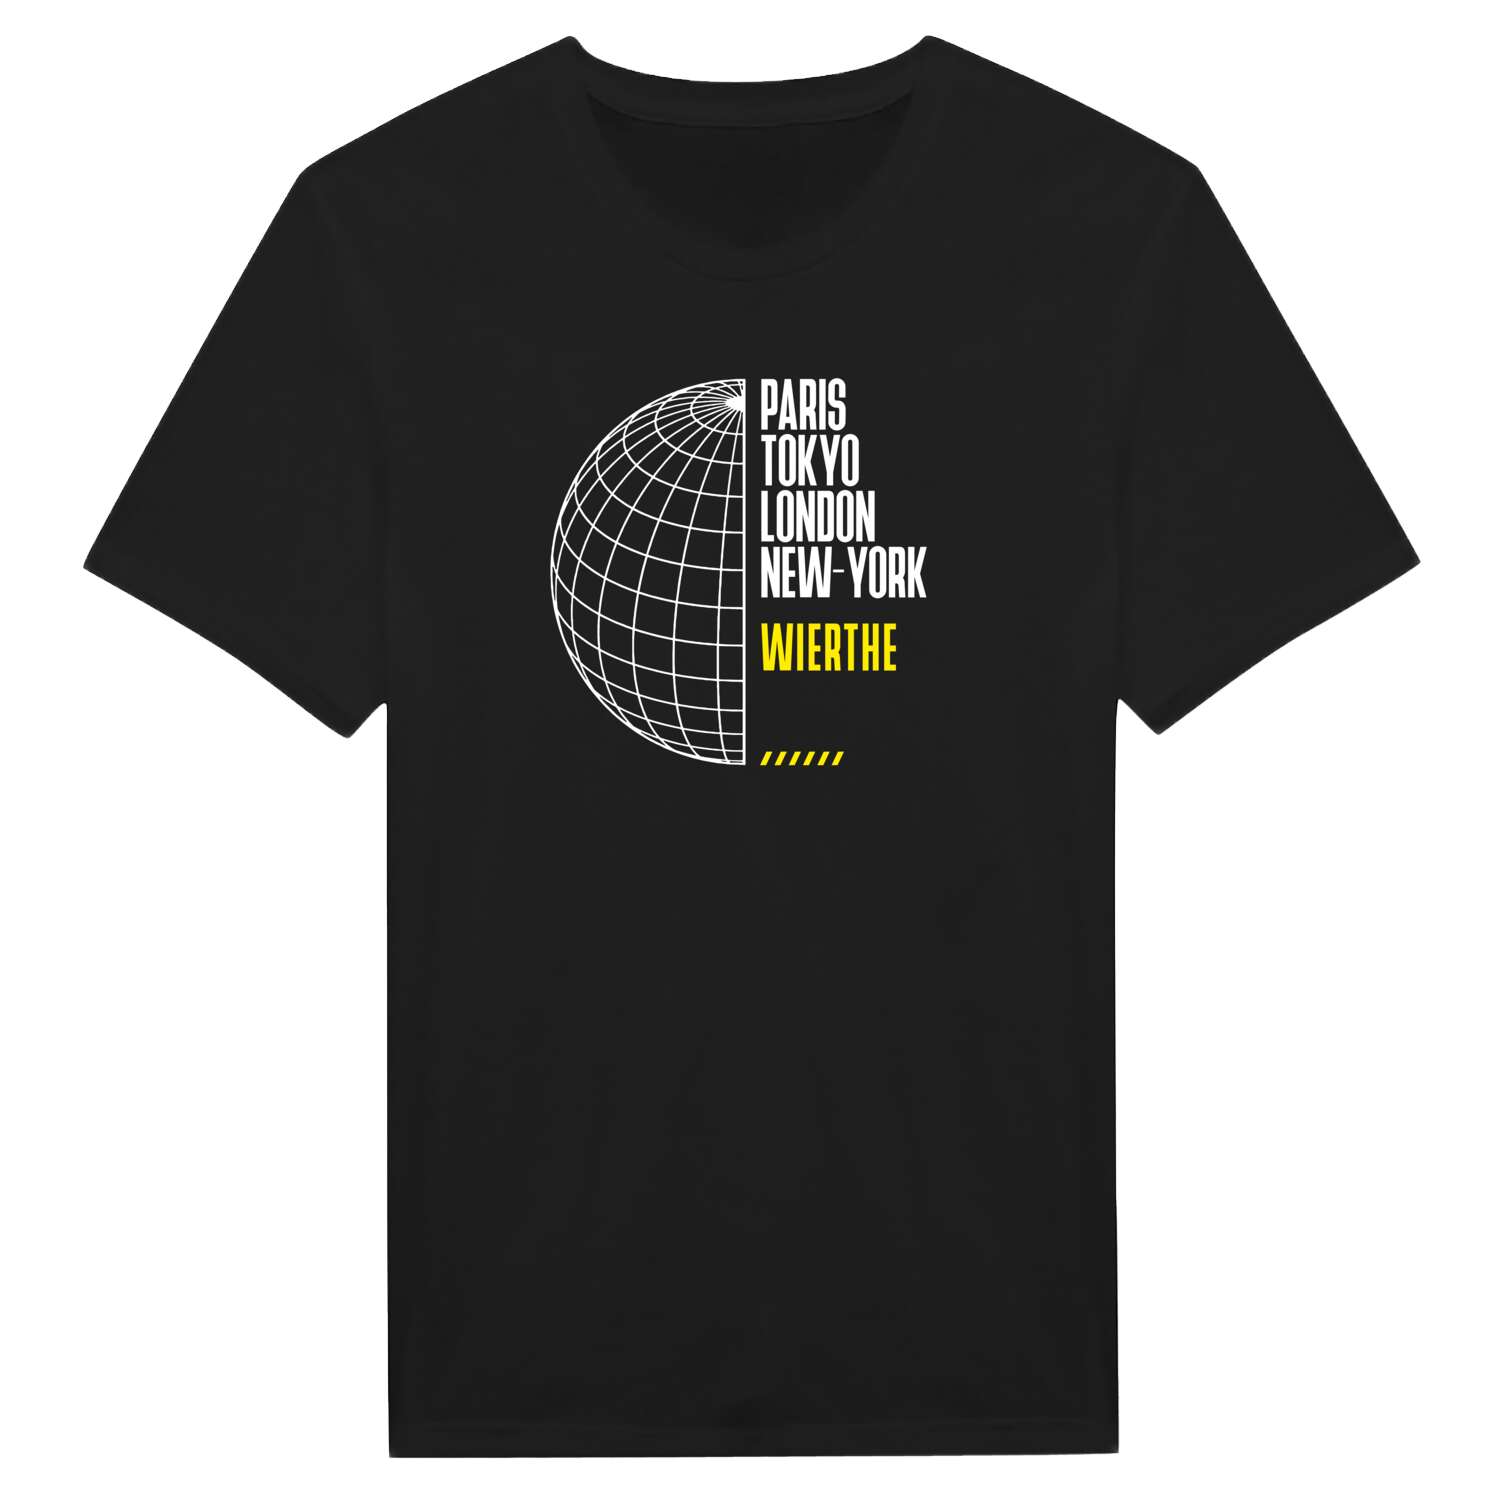 Wierthe T-Shirt »Paris Tokyo London«